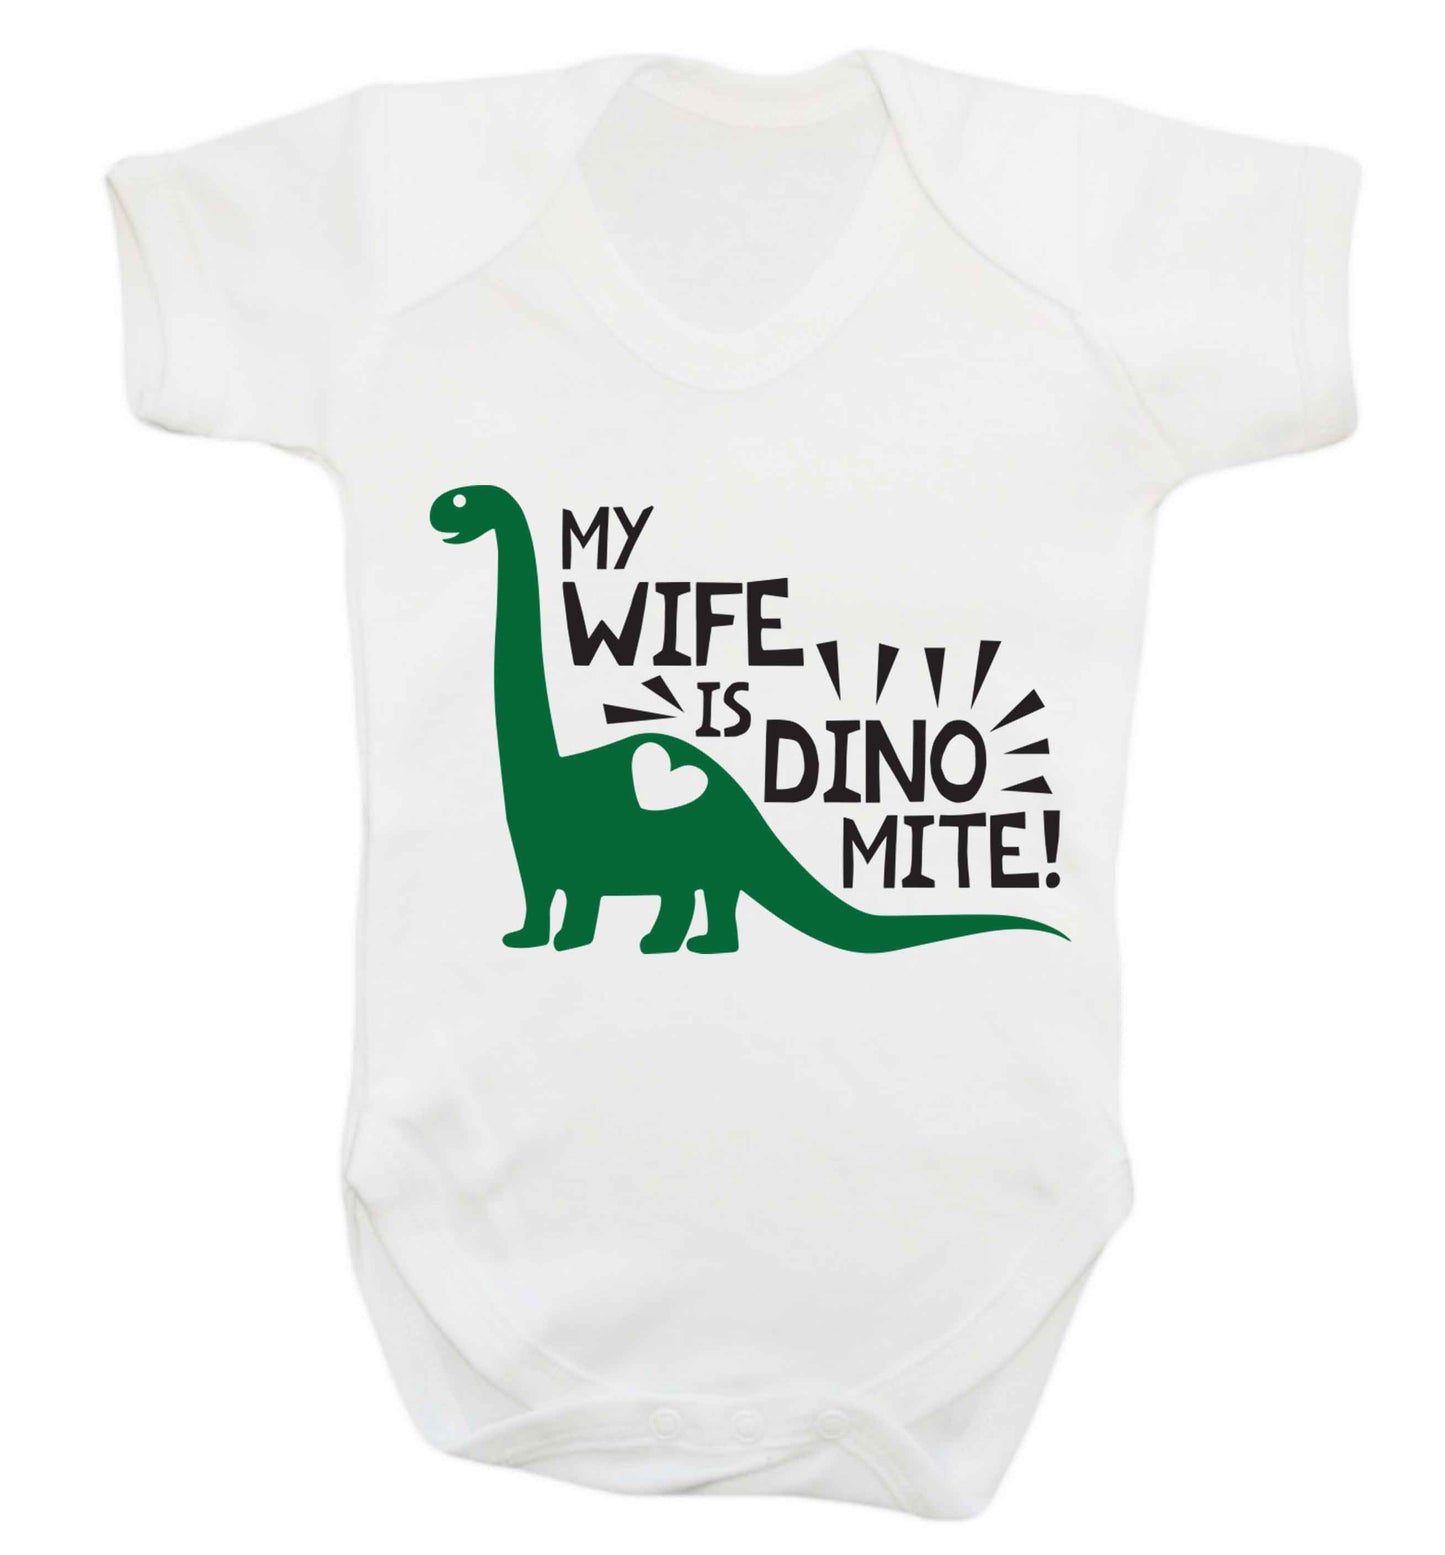 My wife is dinomite! Baby Vest white 18-24 months